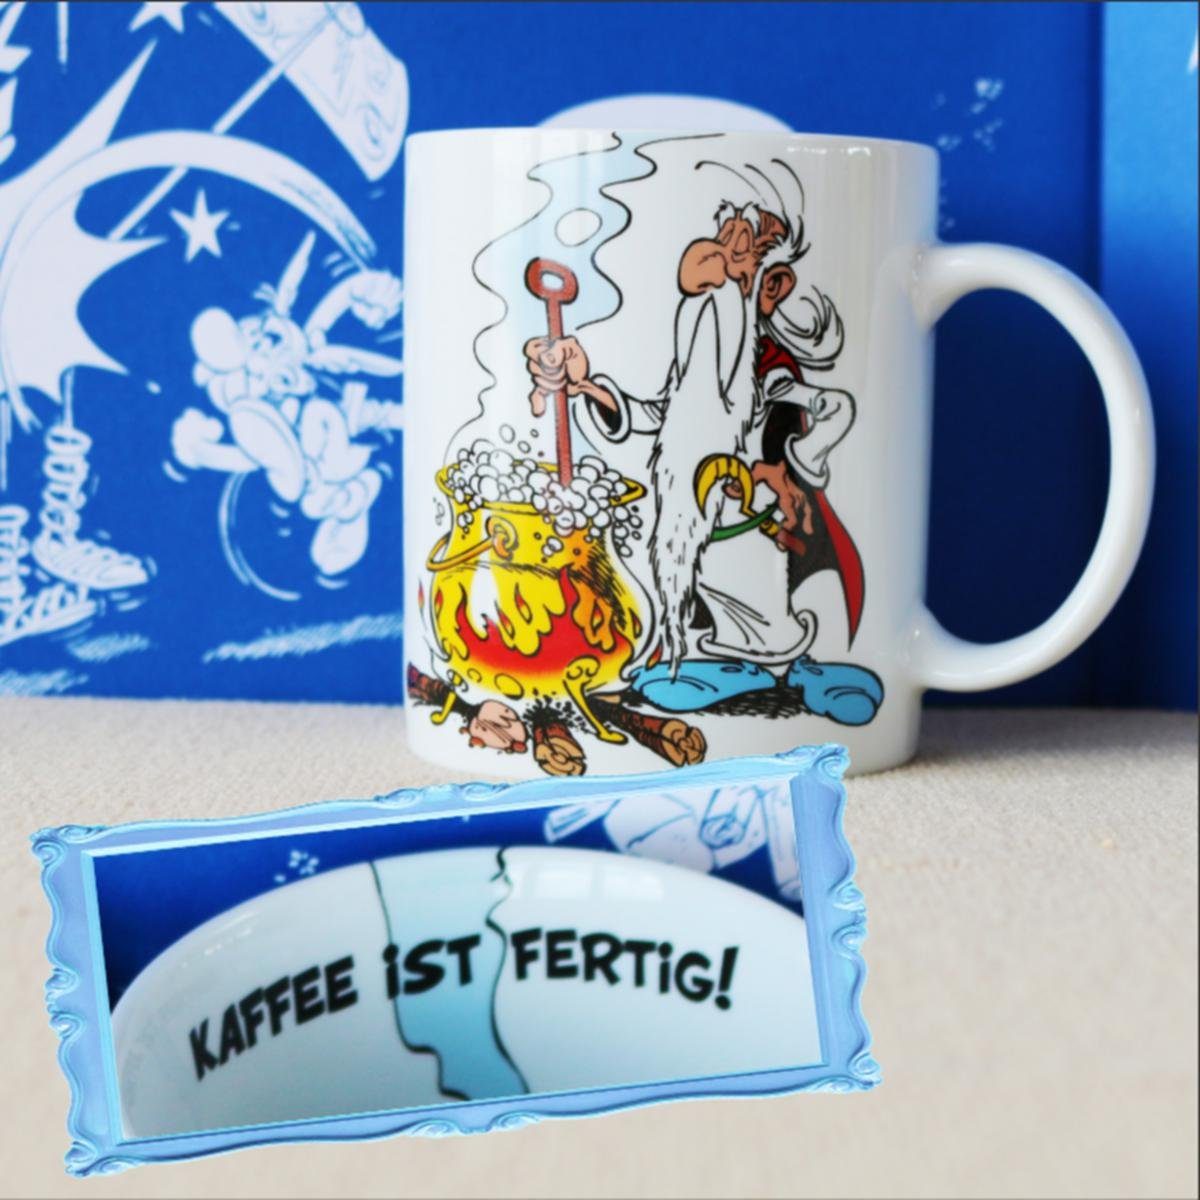 Asterix Becher Porzellan KAFFEE - Könitz Porzellan FERTIG!, Könitz IST